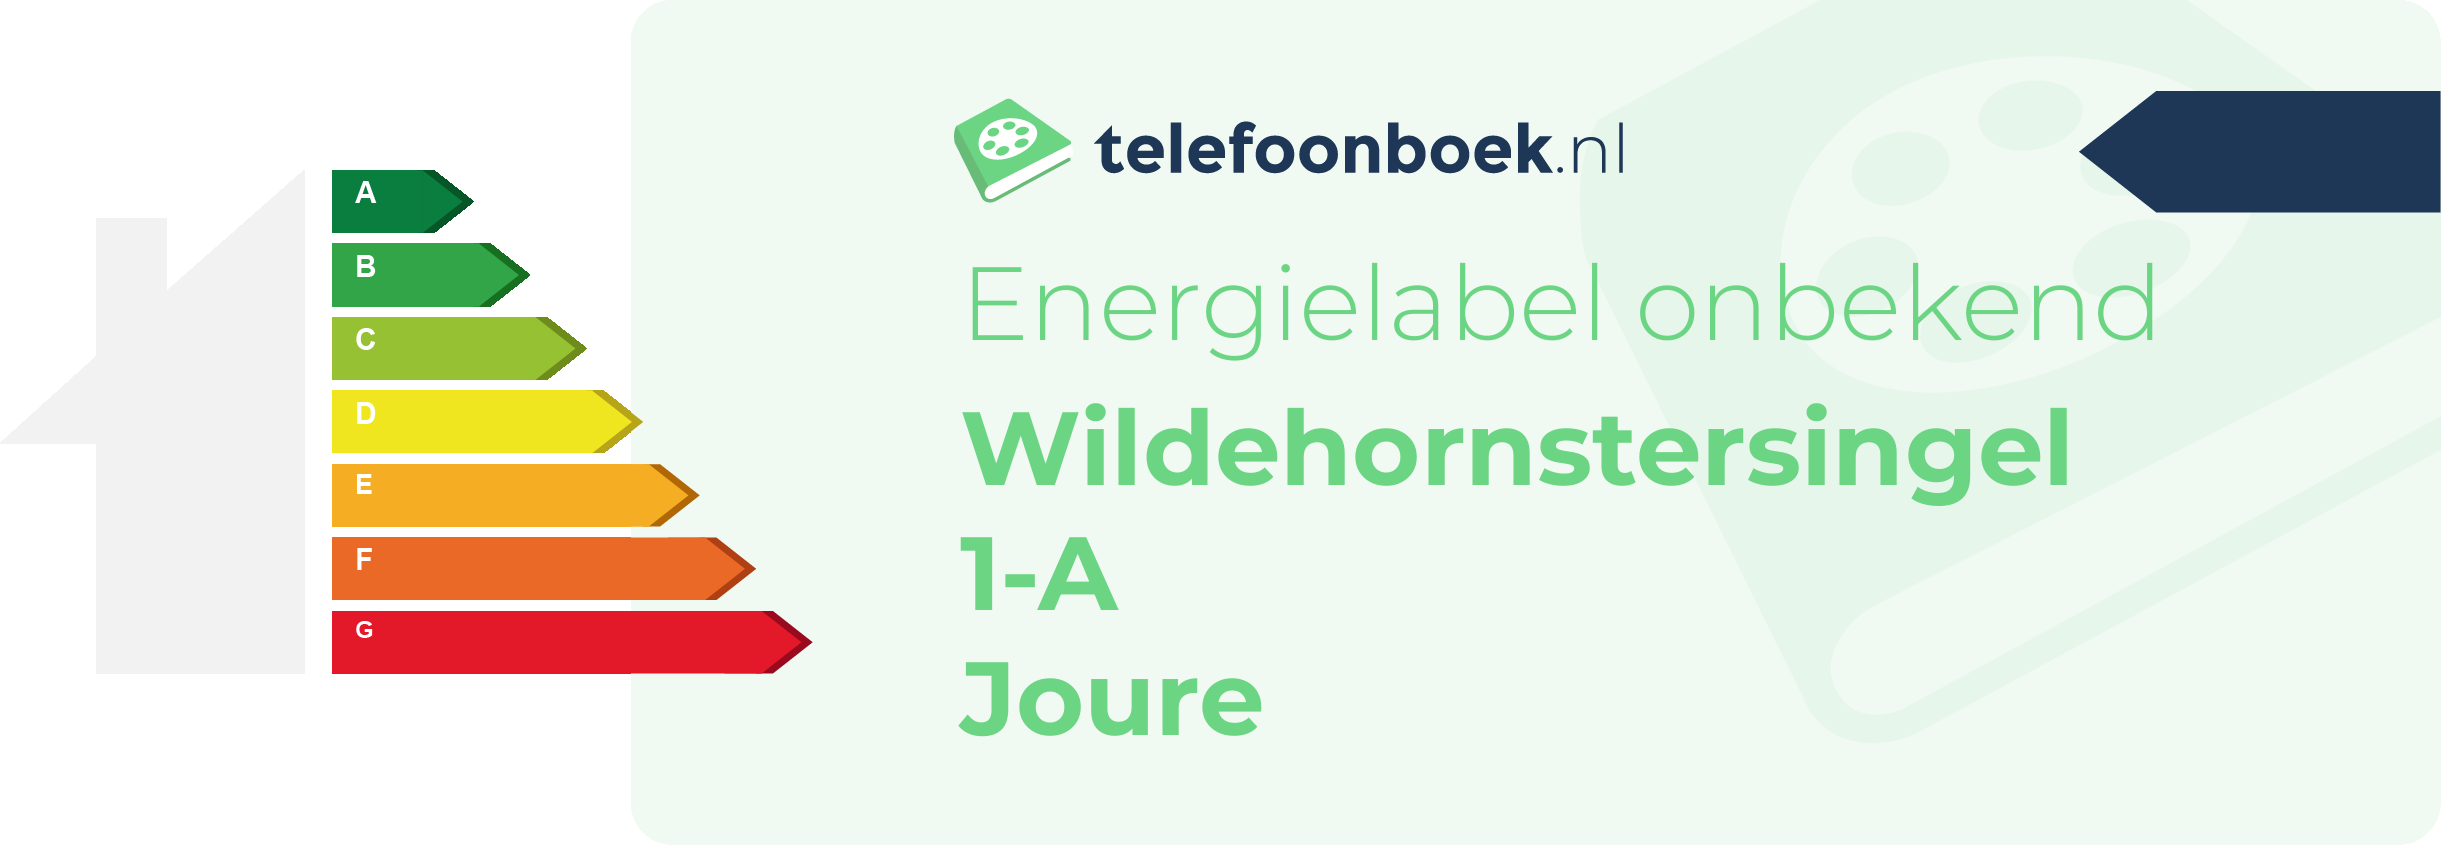 Energielabel Wildehornstersingel 1-A Joure